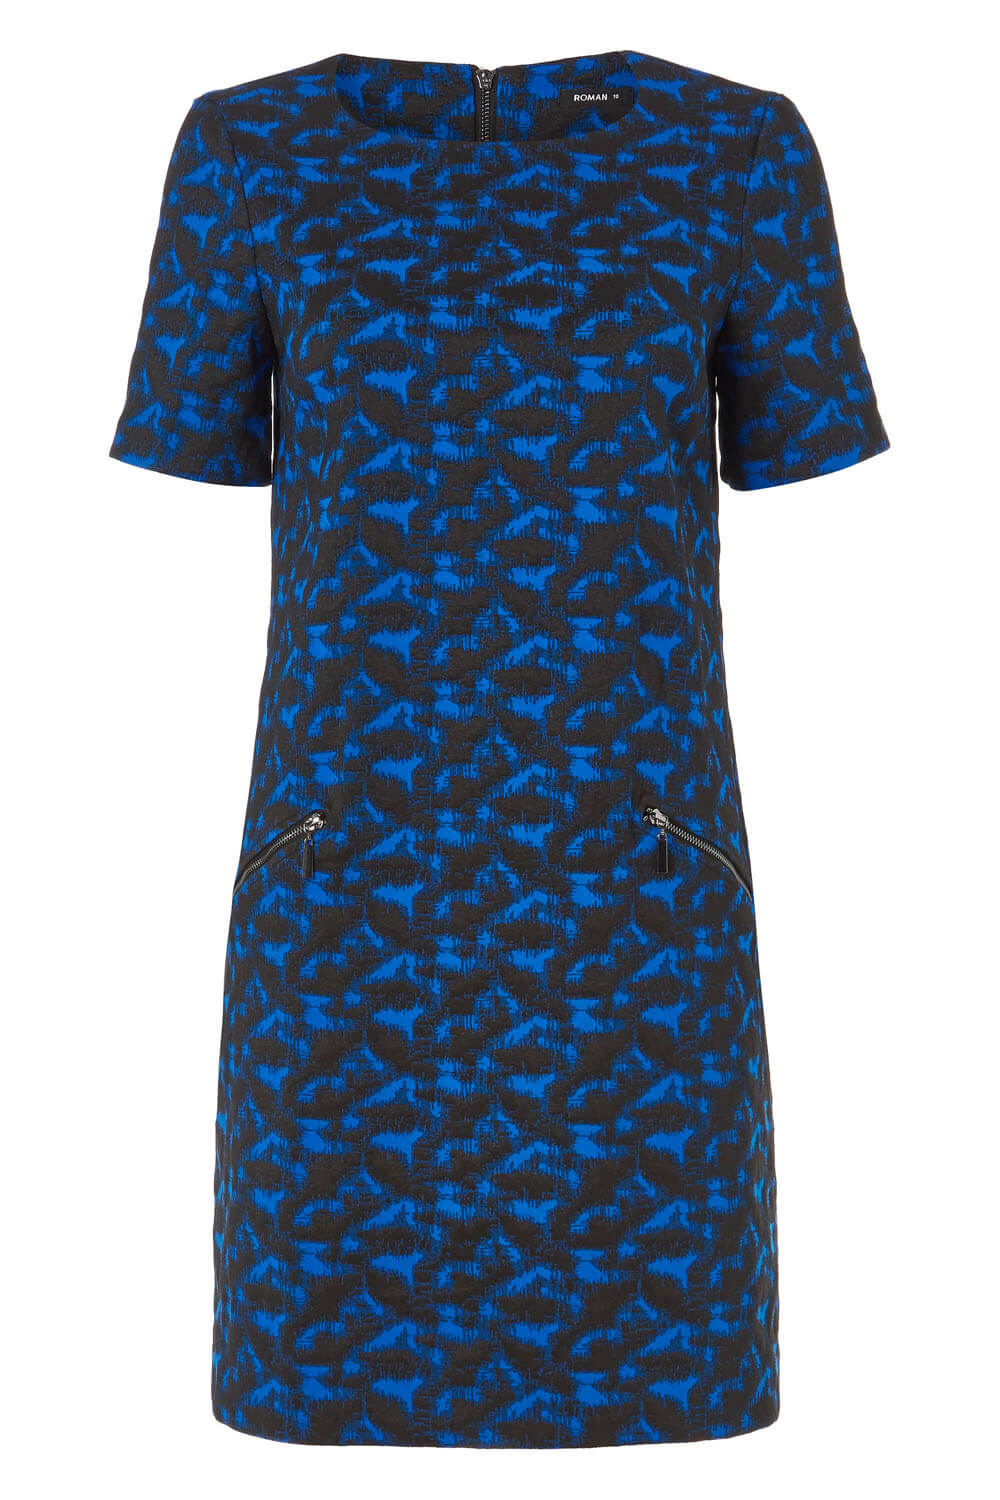 Royal Blue Abstract Zip Pocket Shift Dress, Image 5 of 5